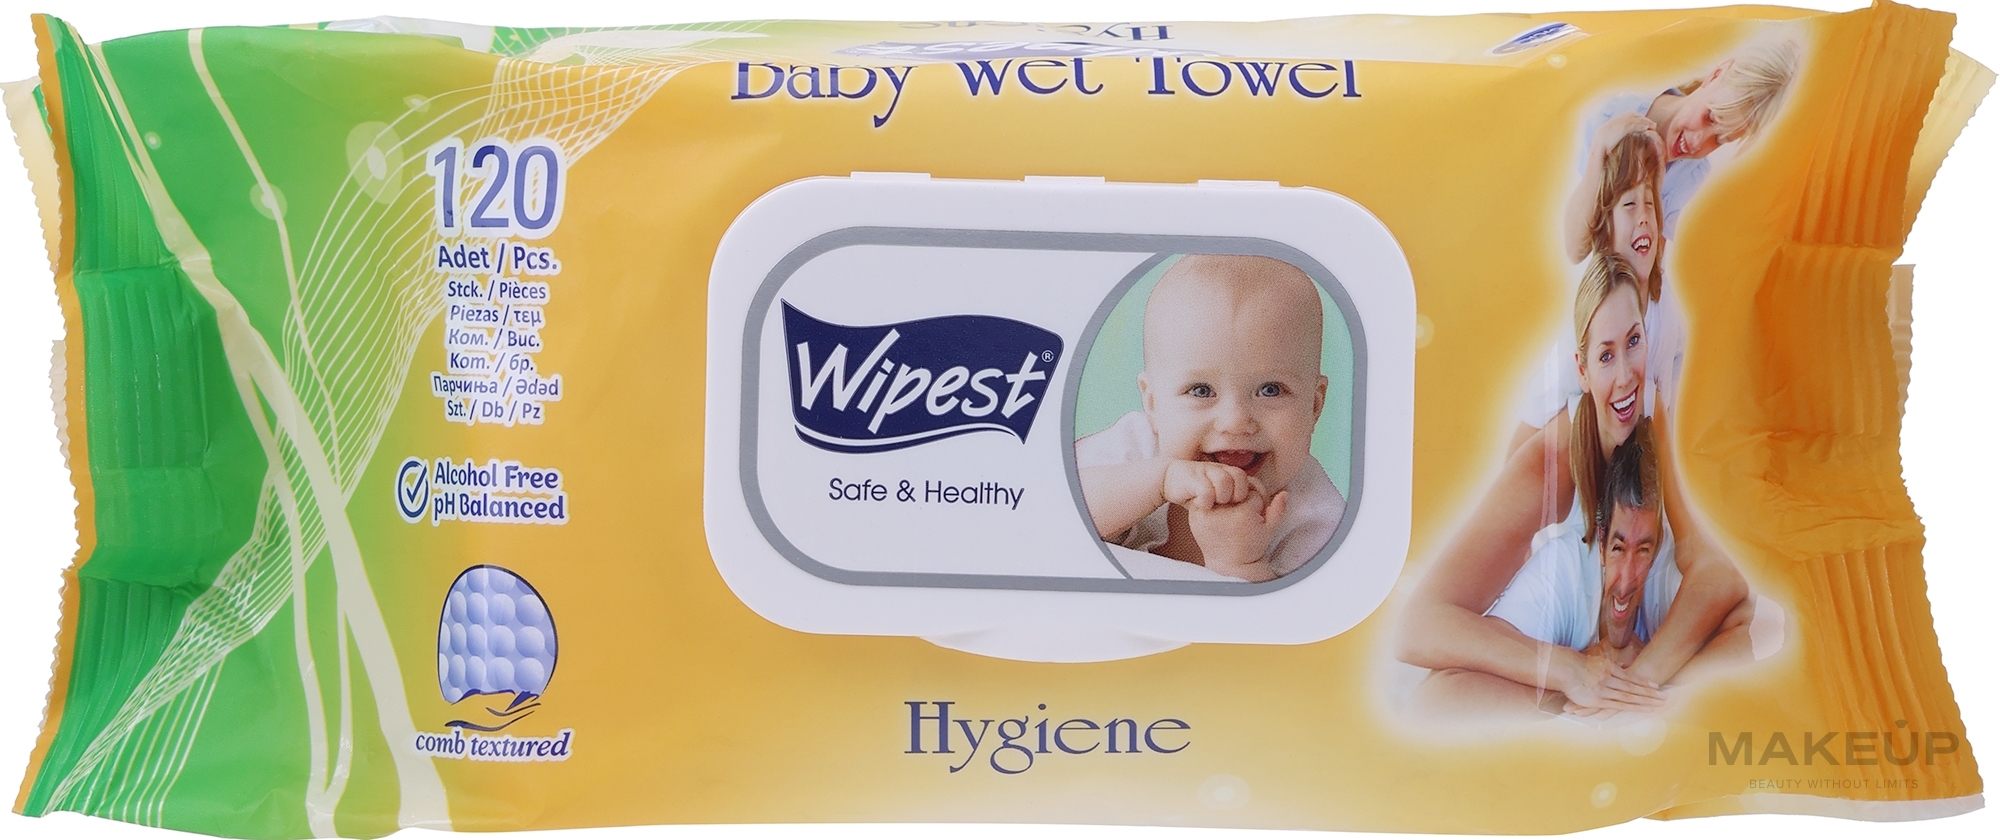 Chusteczki dla niemowląt Hygiene, 120 szt. - Wipest Safe & Healthy Wet Towel — Zdjęcie 120 szt.